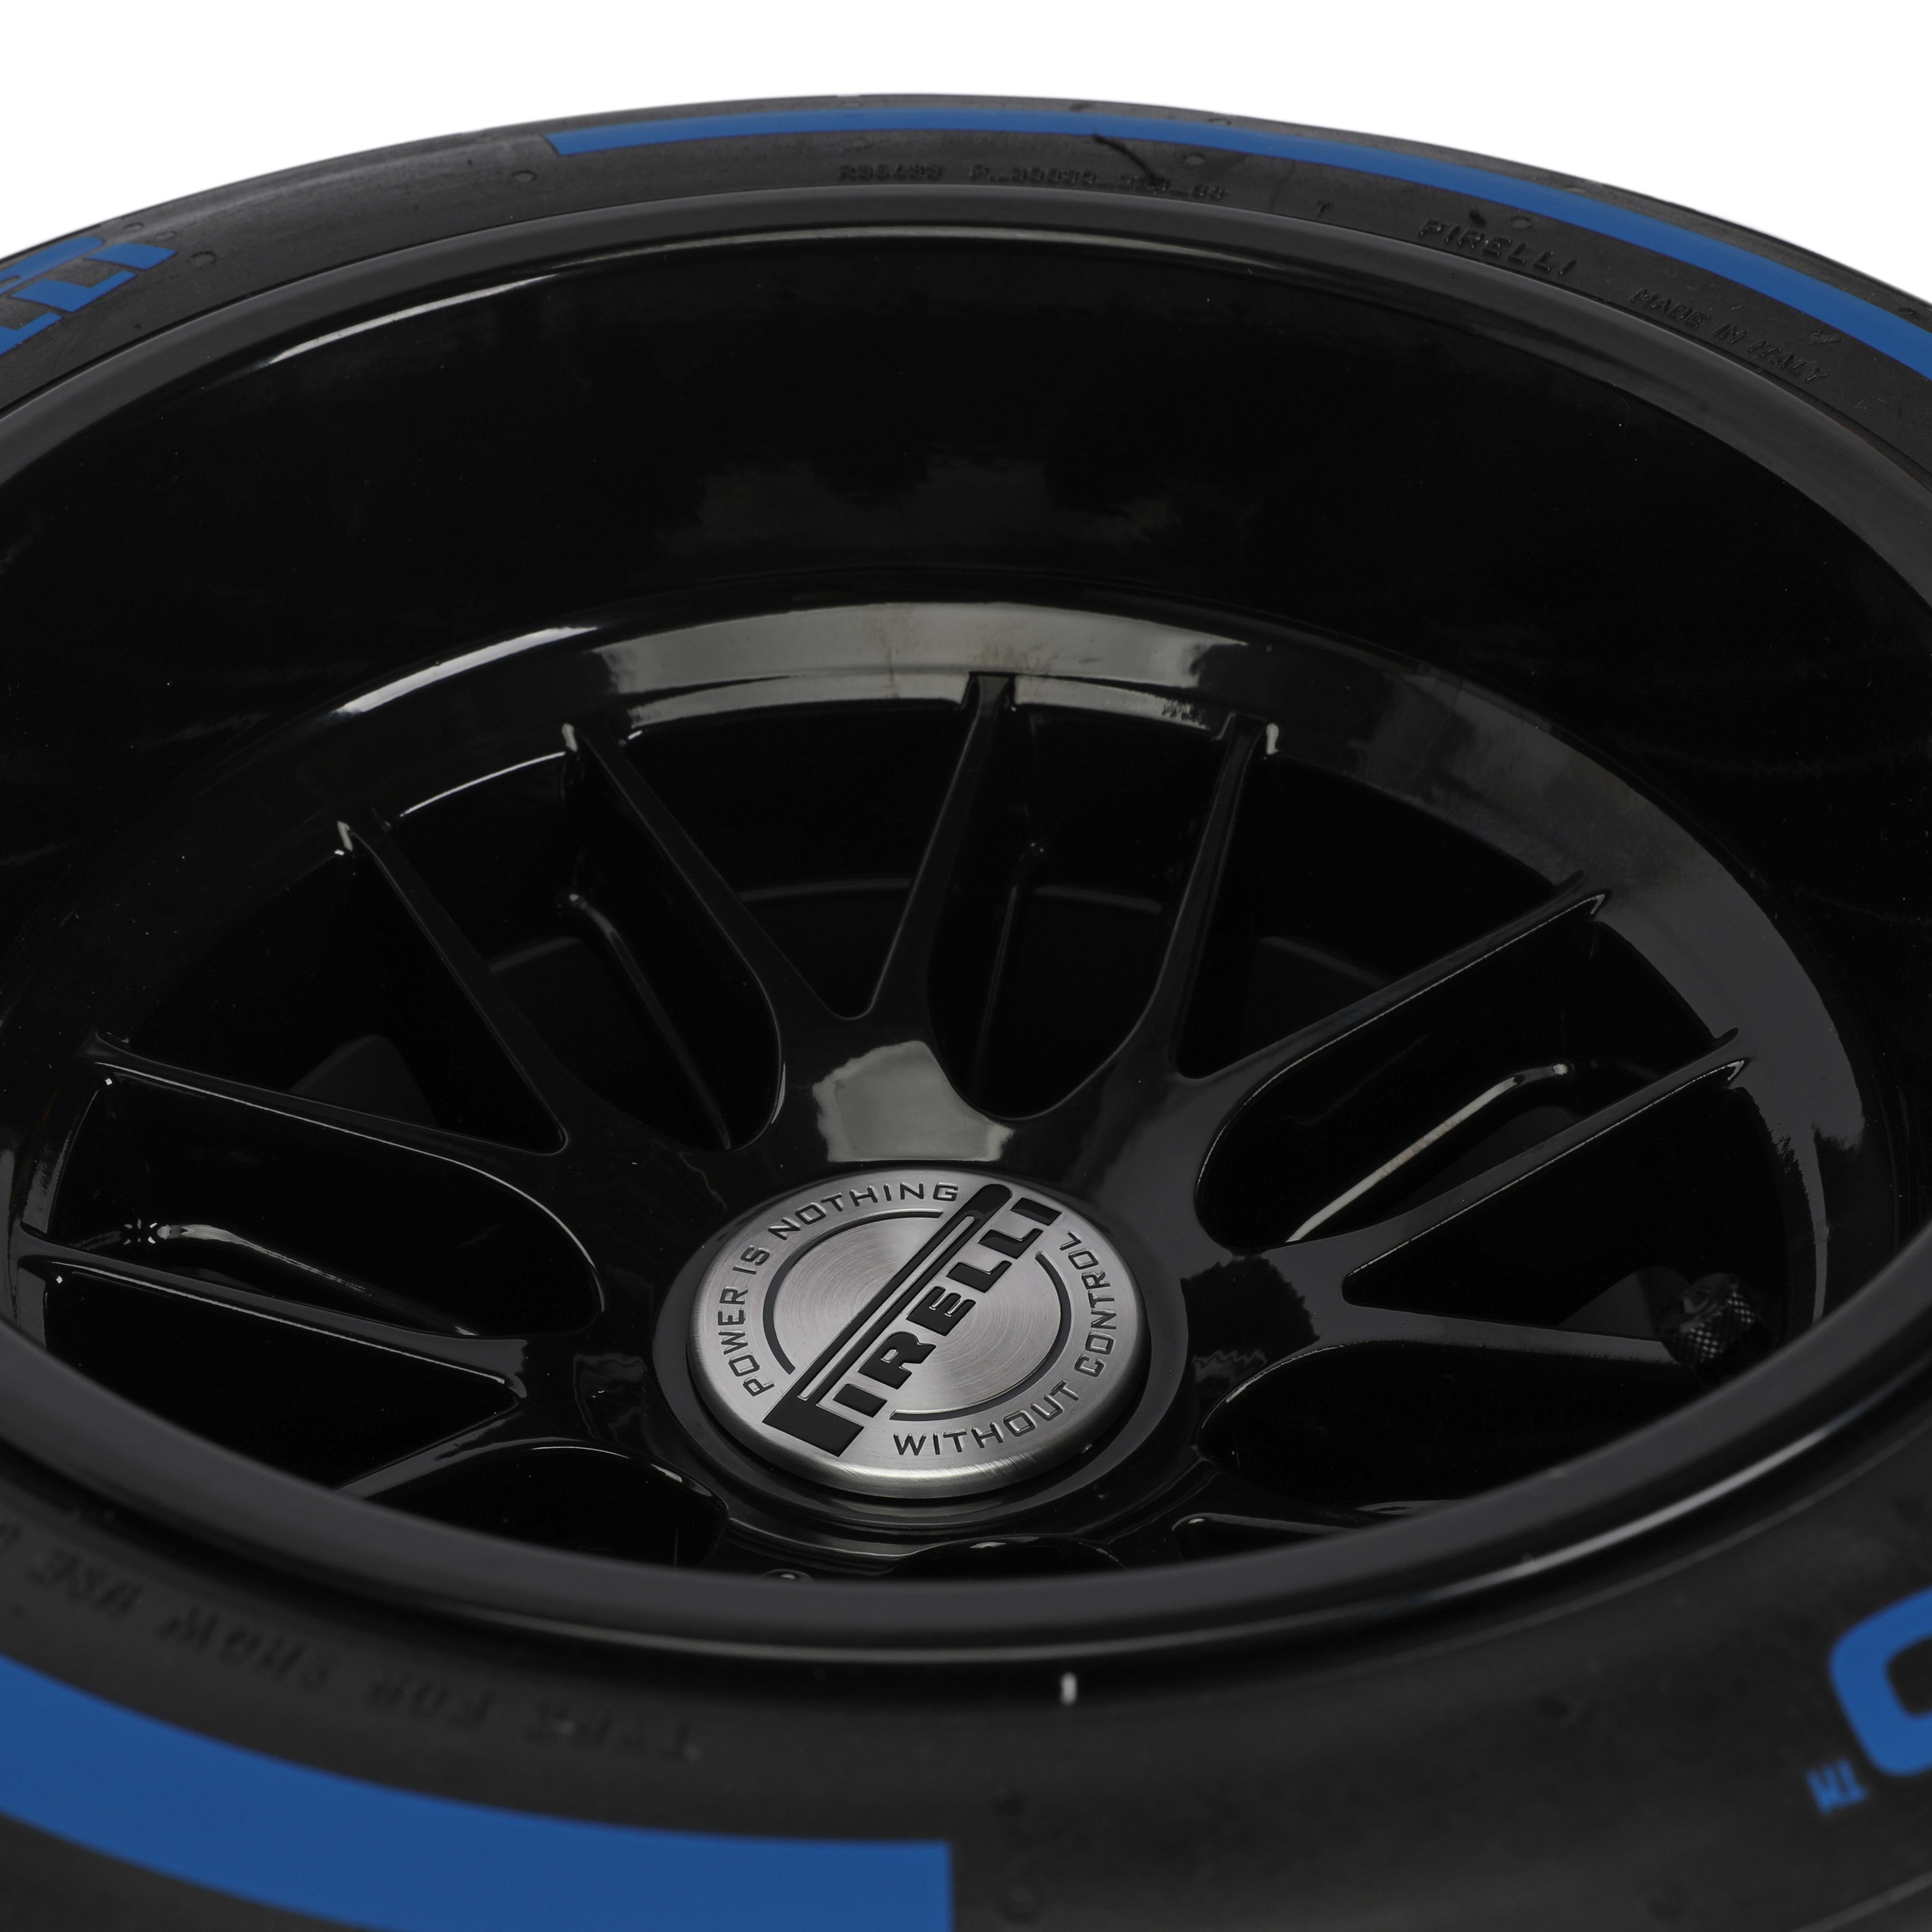 Pirelli Wind Tunnel Tyre - Blue Wet Compound